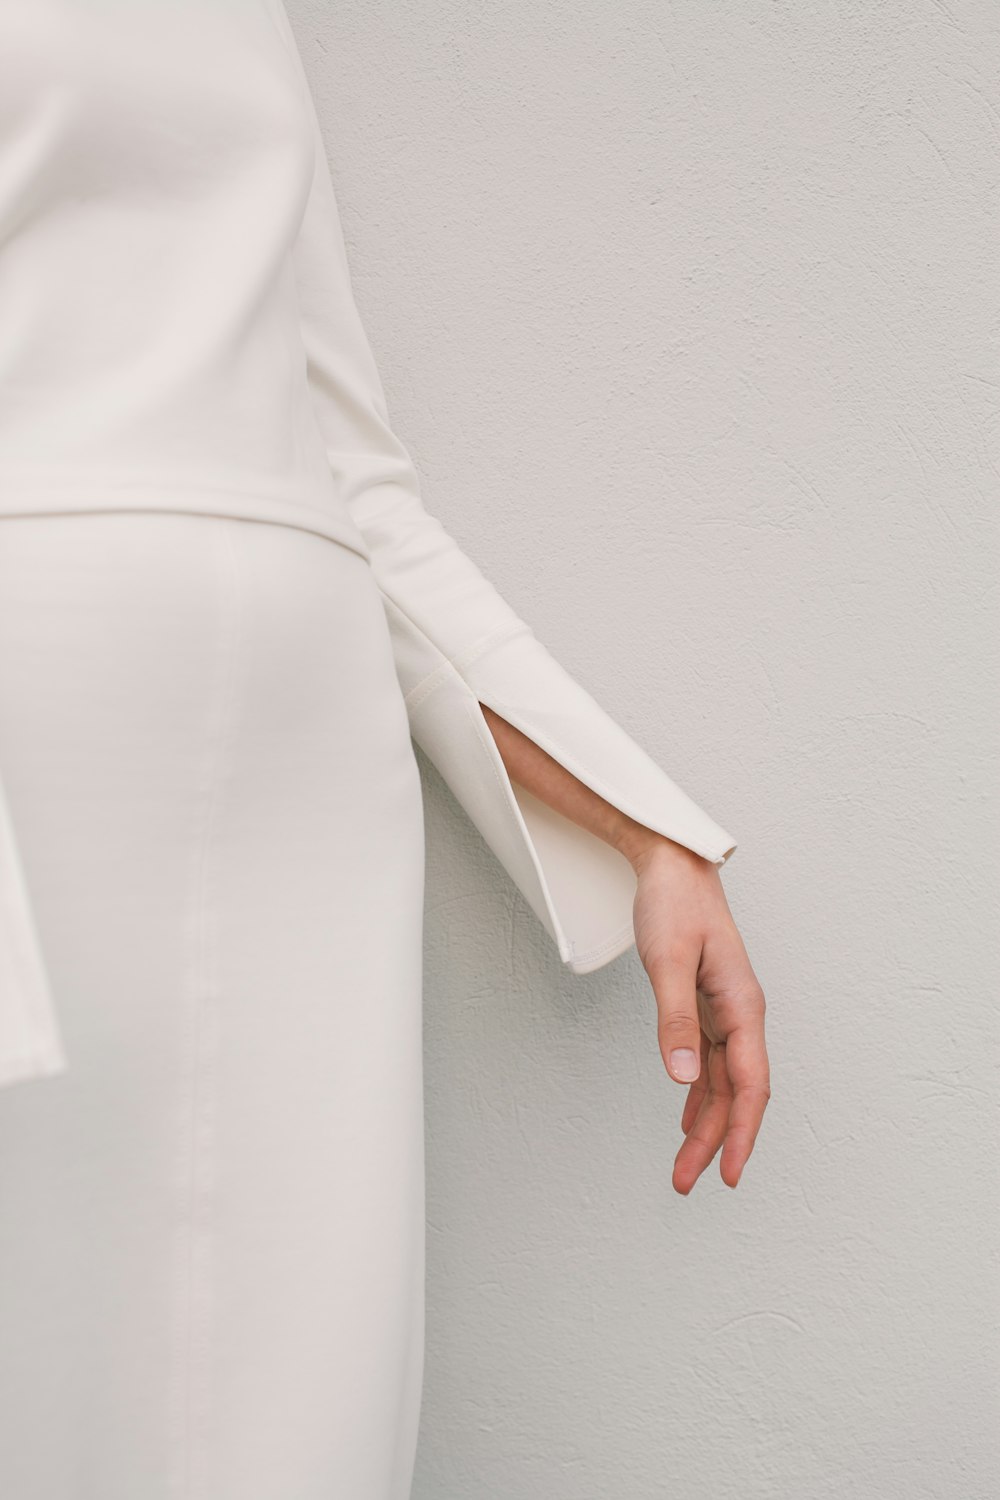 Une femme en robe blanche tend la main